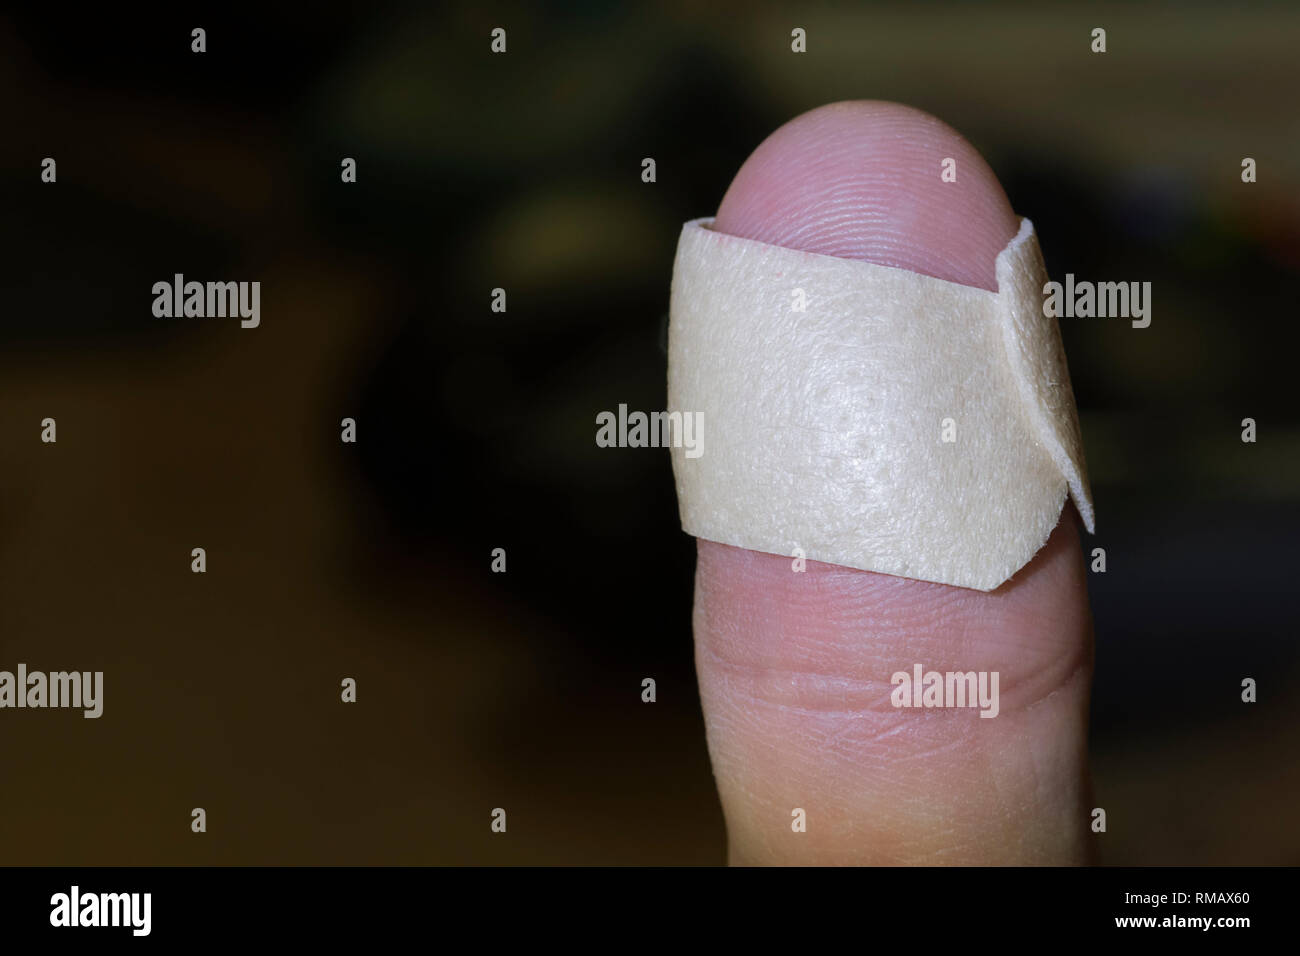 Son doigt avec un emplâtre (aide de bande) autour de lui après une blessure mineure. Banque D'Images